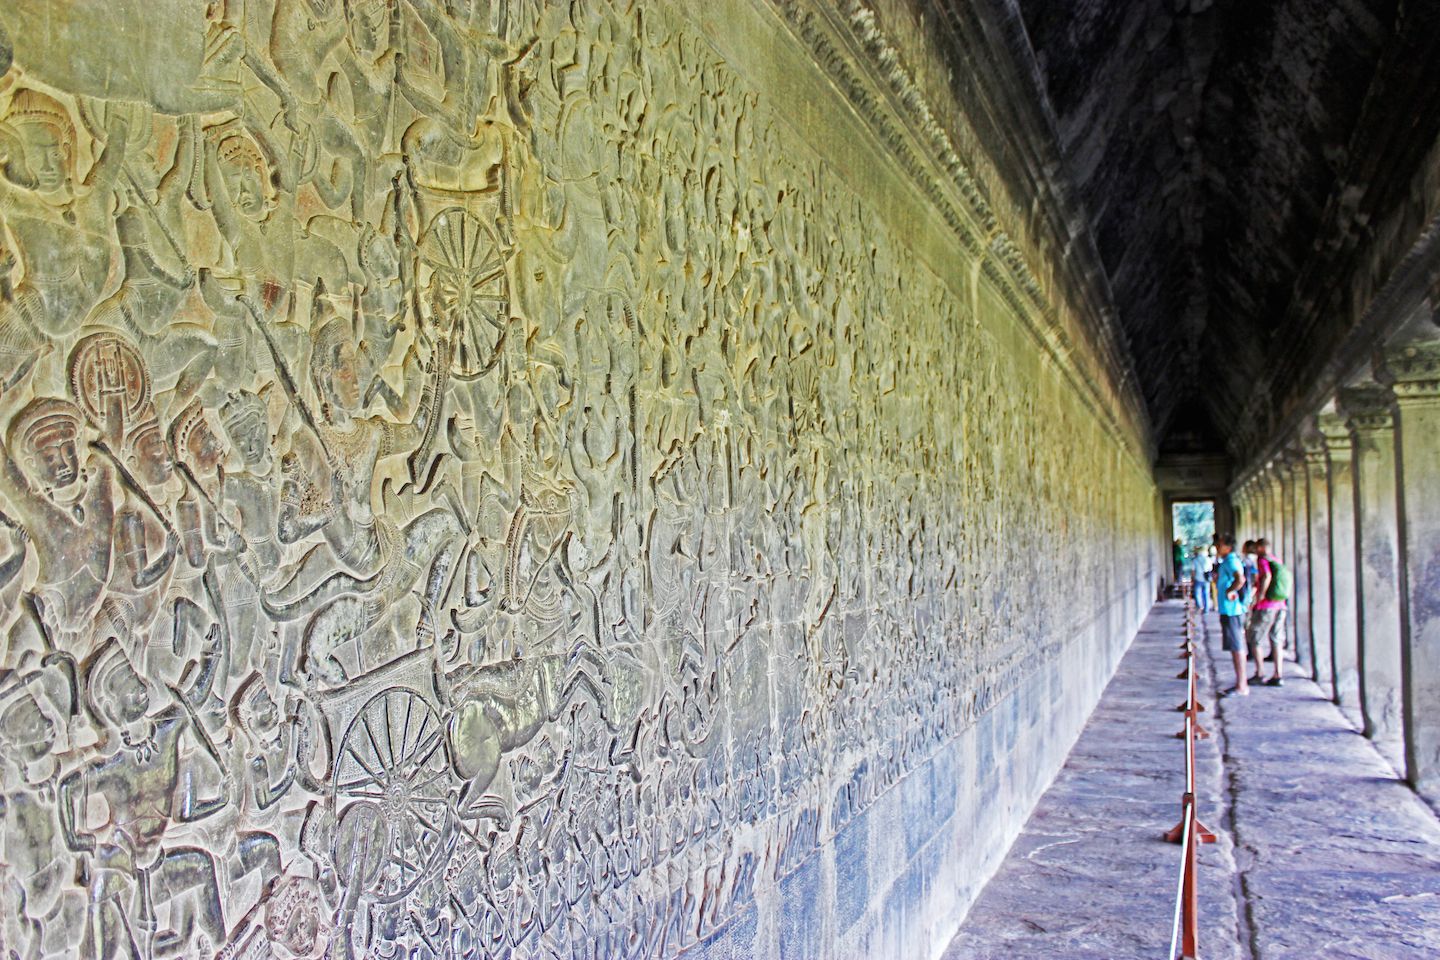 Bas relief galleries of Angkor Wat